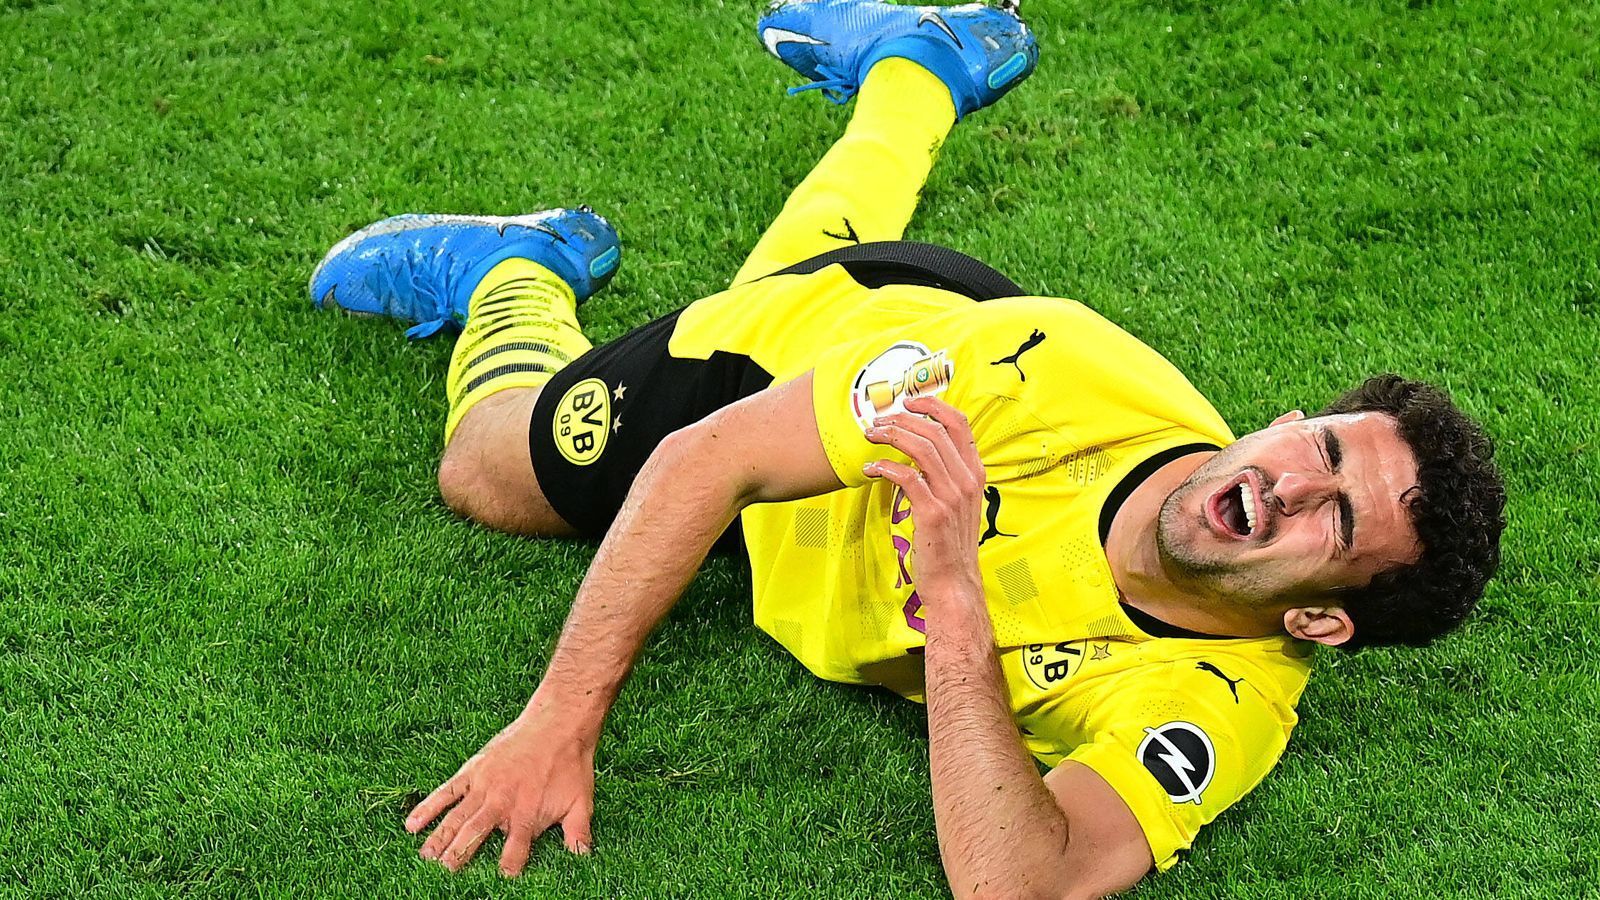 
                <strong>Mateu Moreys Verletzung schockt Borussia Dortmund</strong><br>
                Trainer Edin Terzic meint nach der Partie: "Wenn man es gesehen hat und vor allem wenn man seine Reaktion gehört hat und weiß, was für ein fantastischer Junge er ist, tut das unglaublich weh."
              